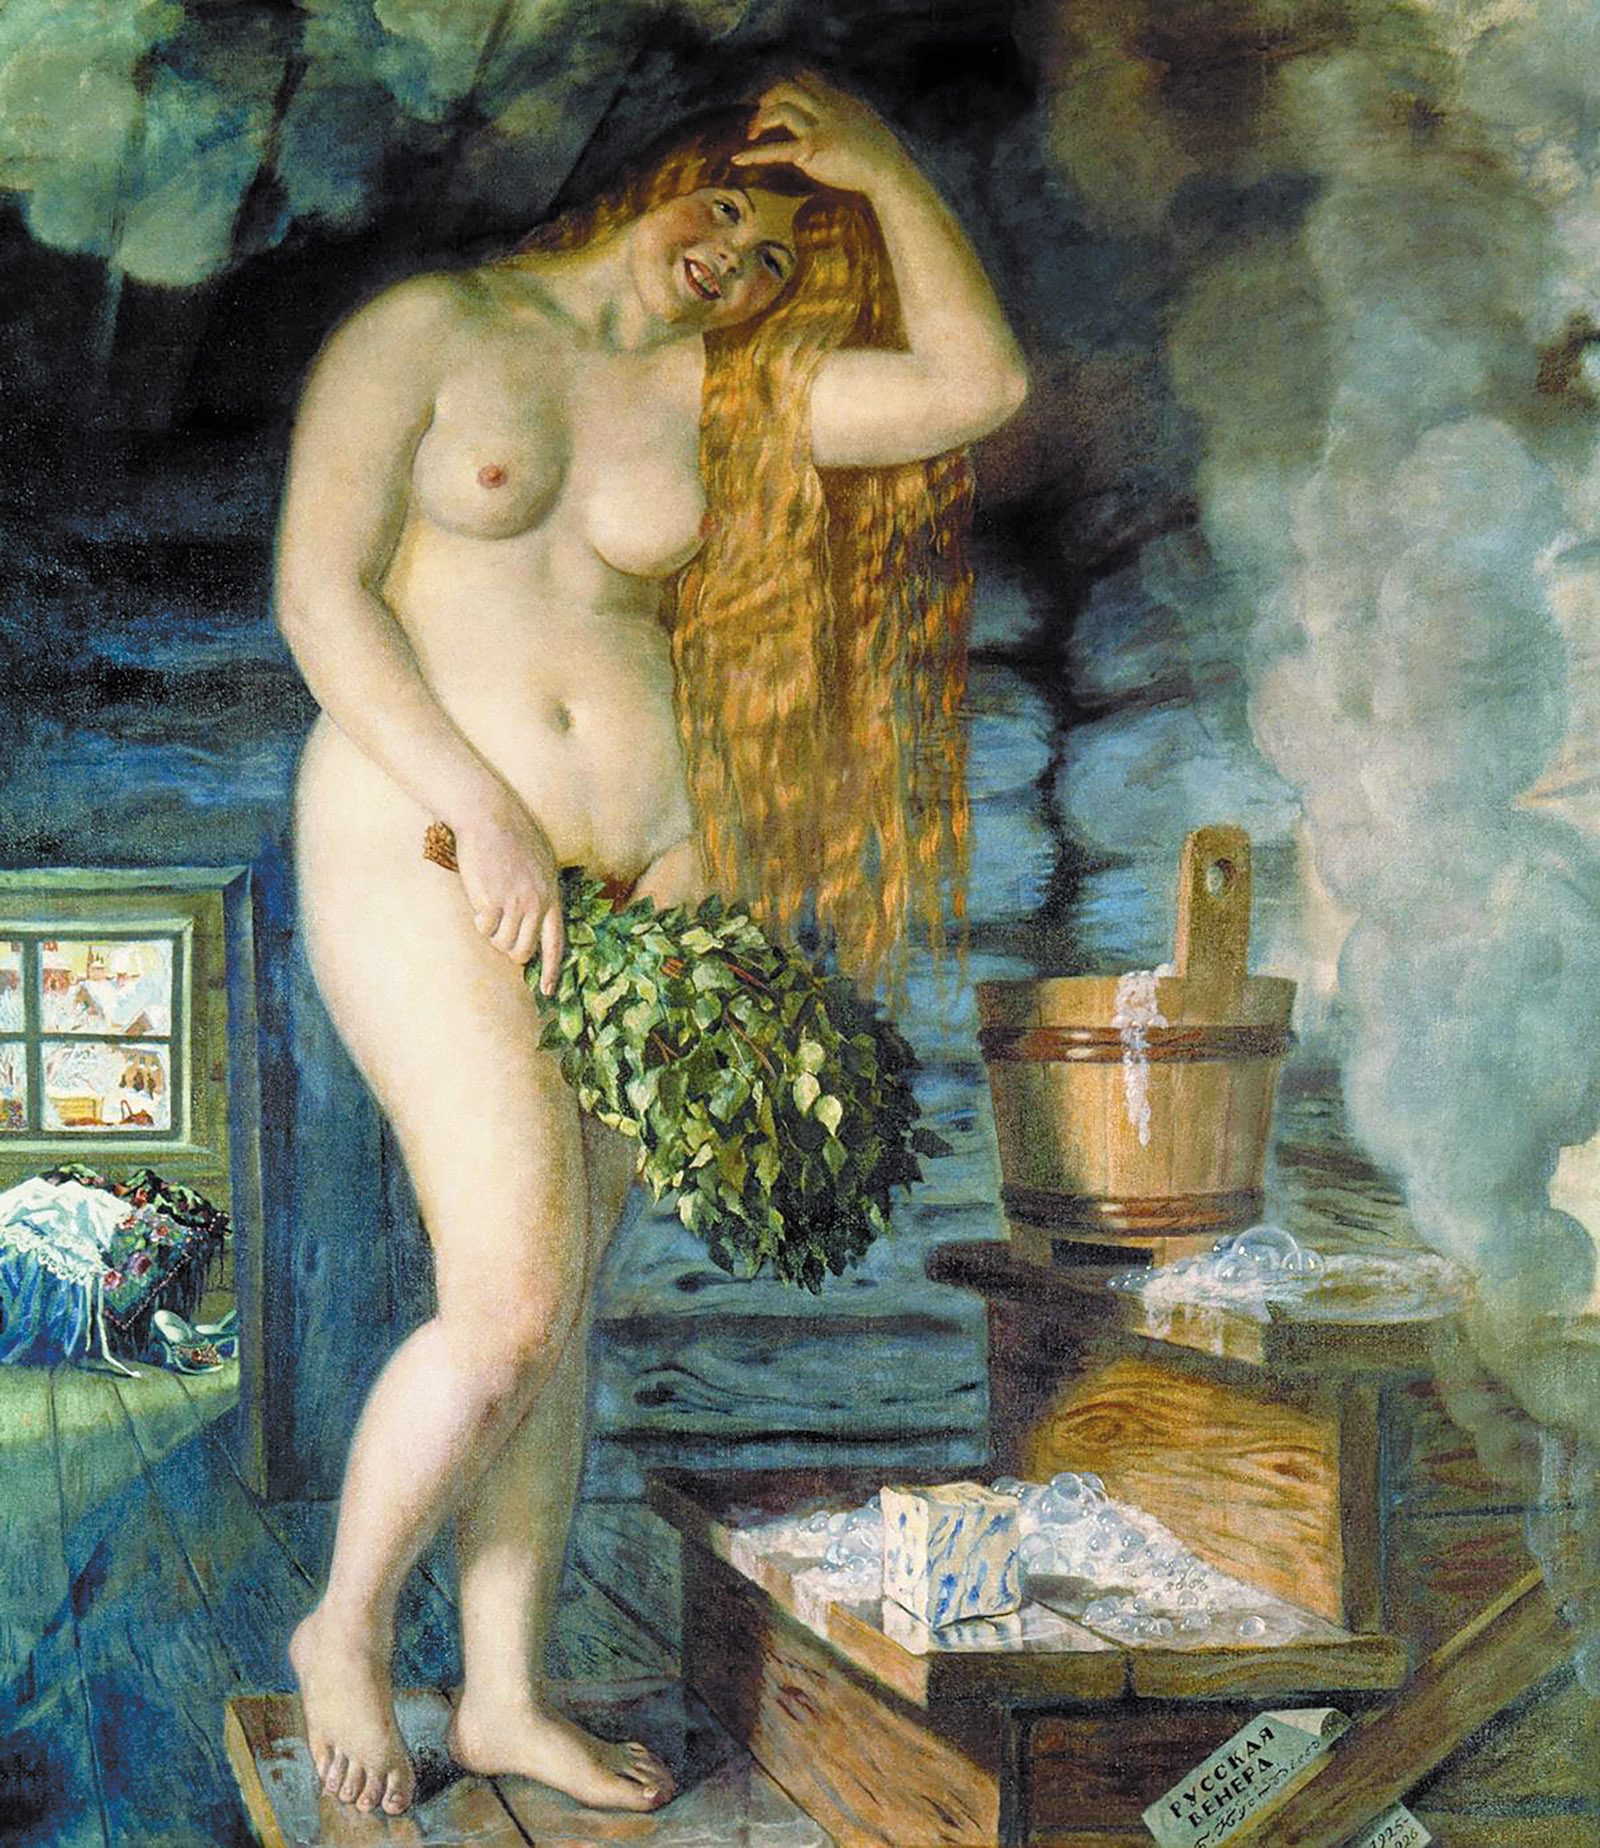 Russian Venus; painting by Boris Kustodiev